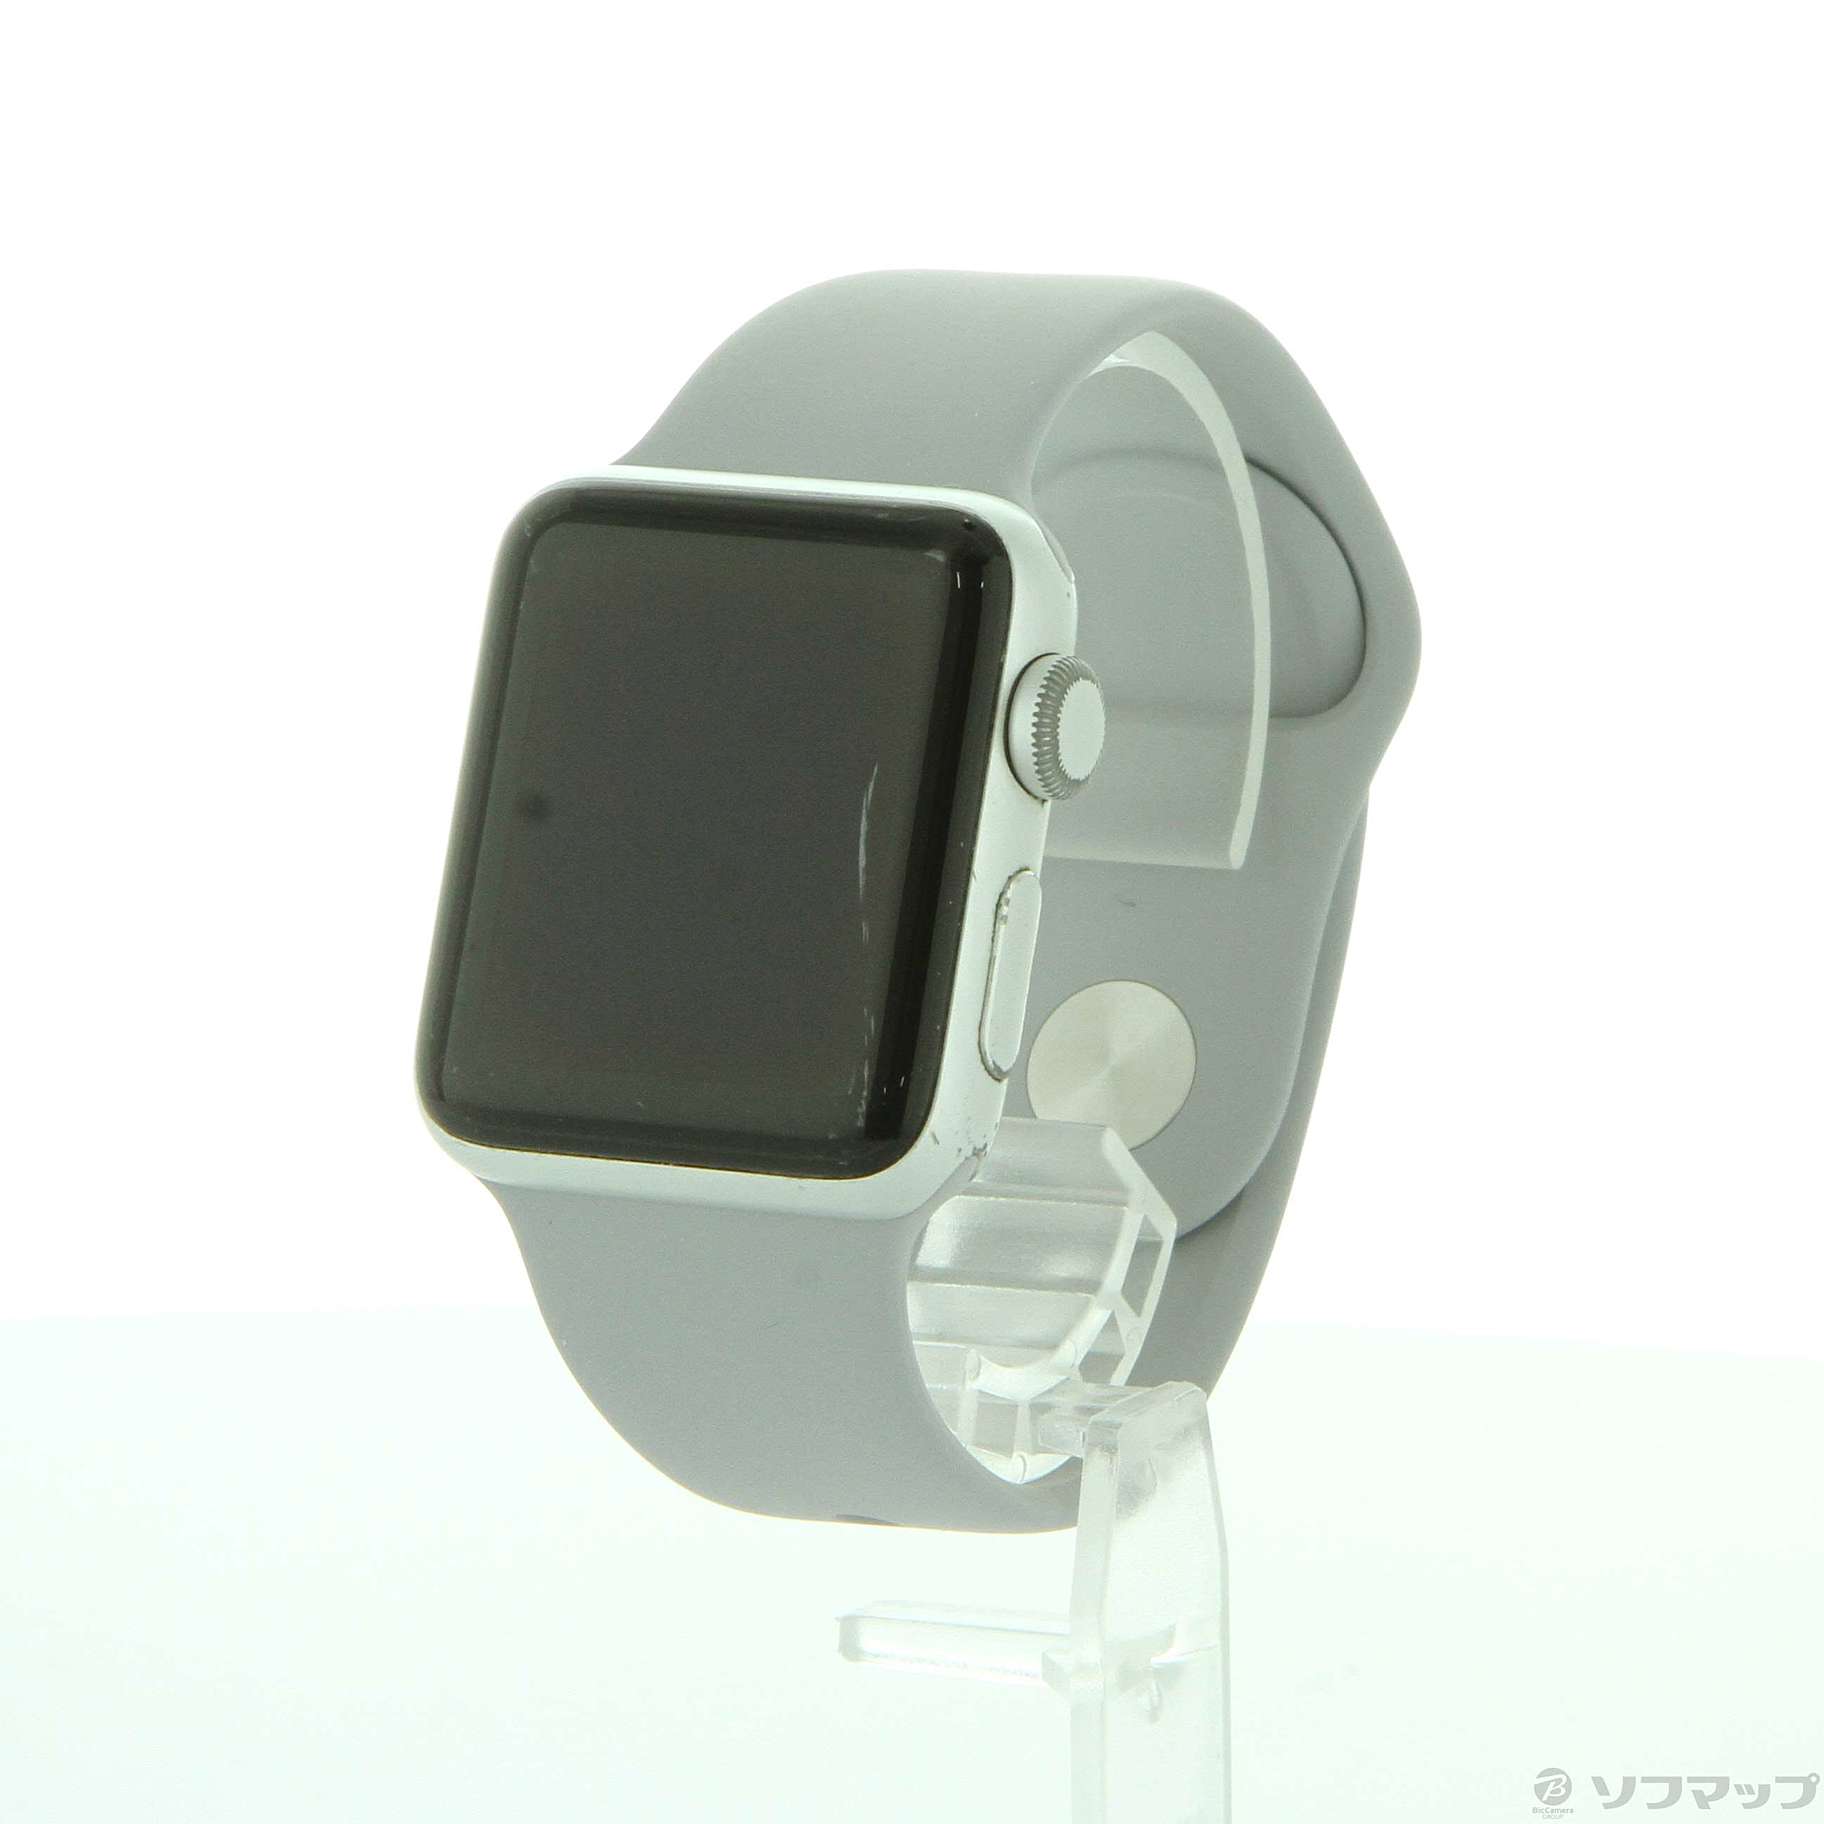 中古品〕 Apple Watch Series 3 GPS 38mm シルバーアルミニウムケース 